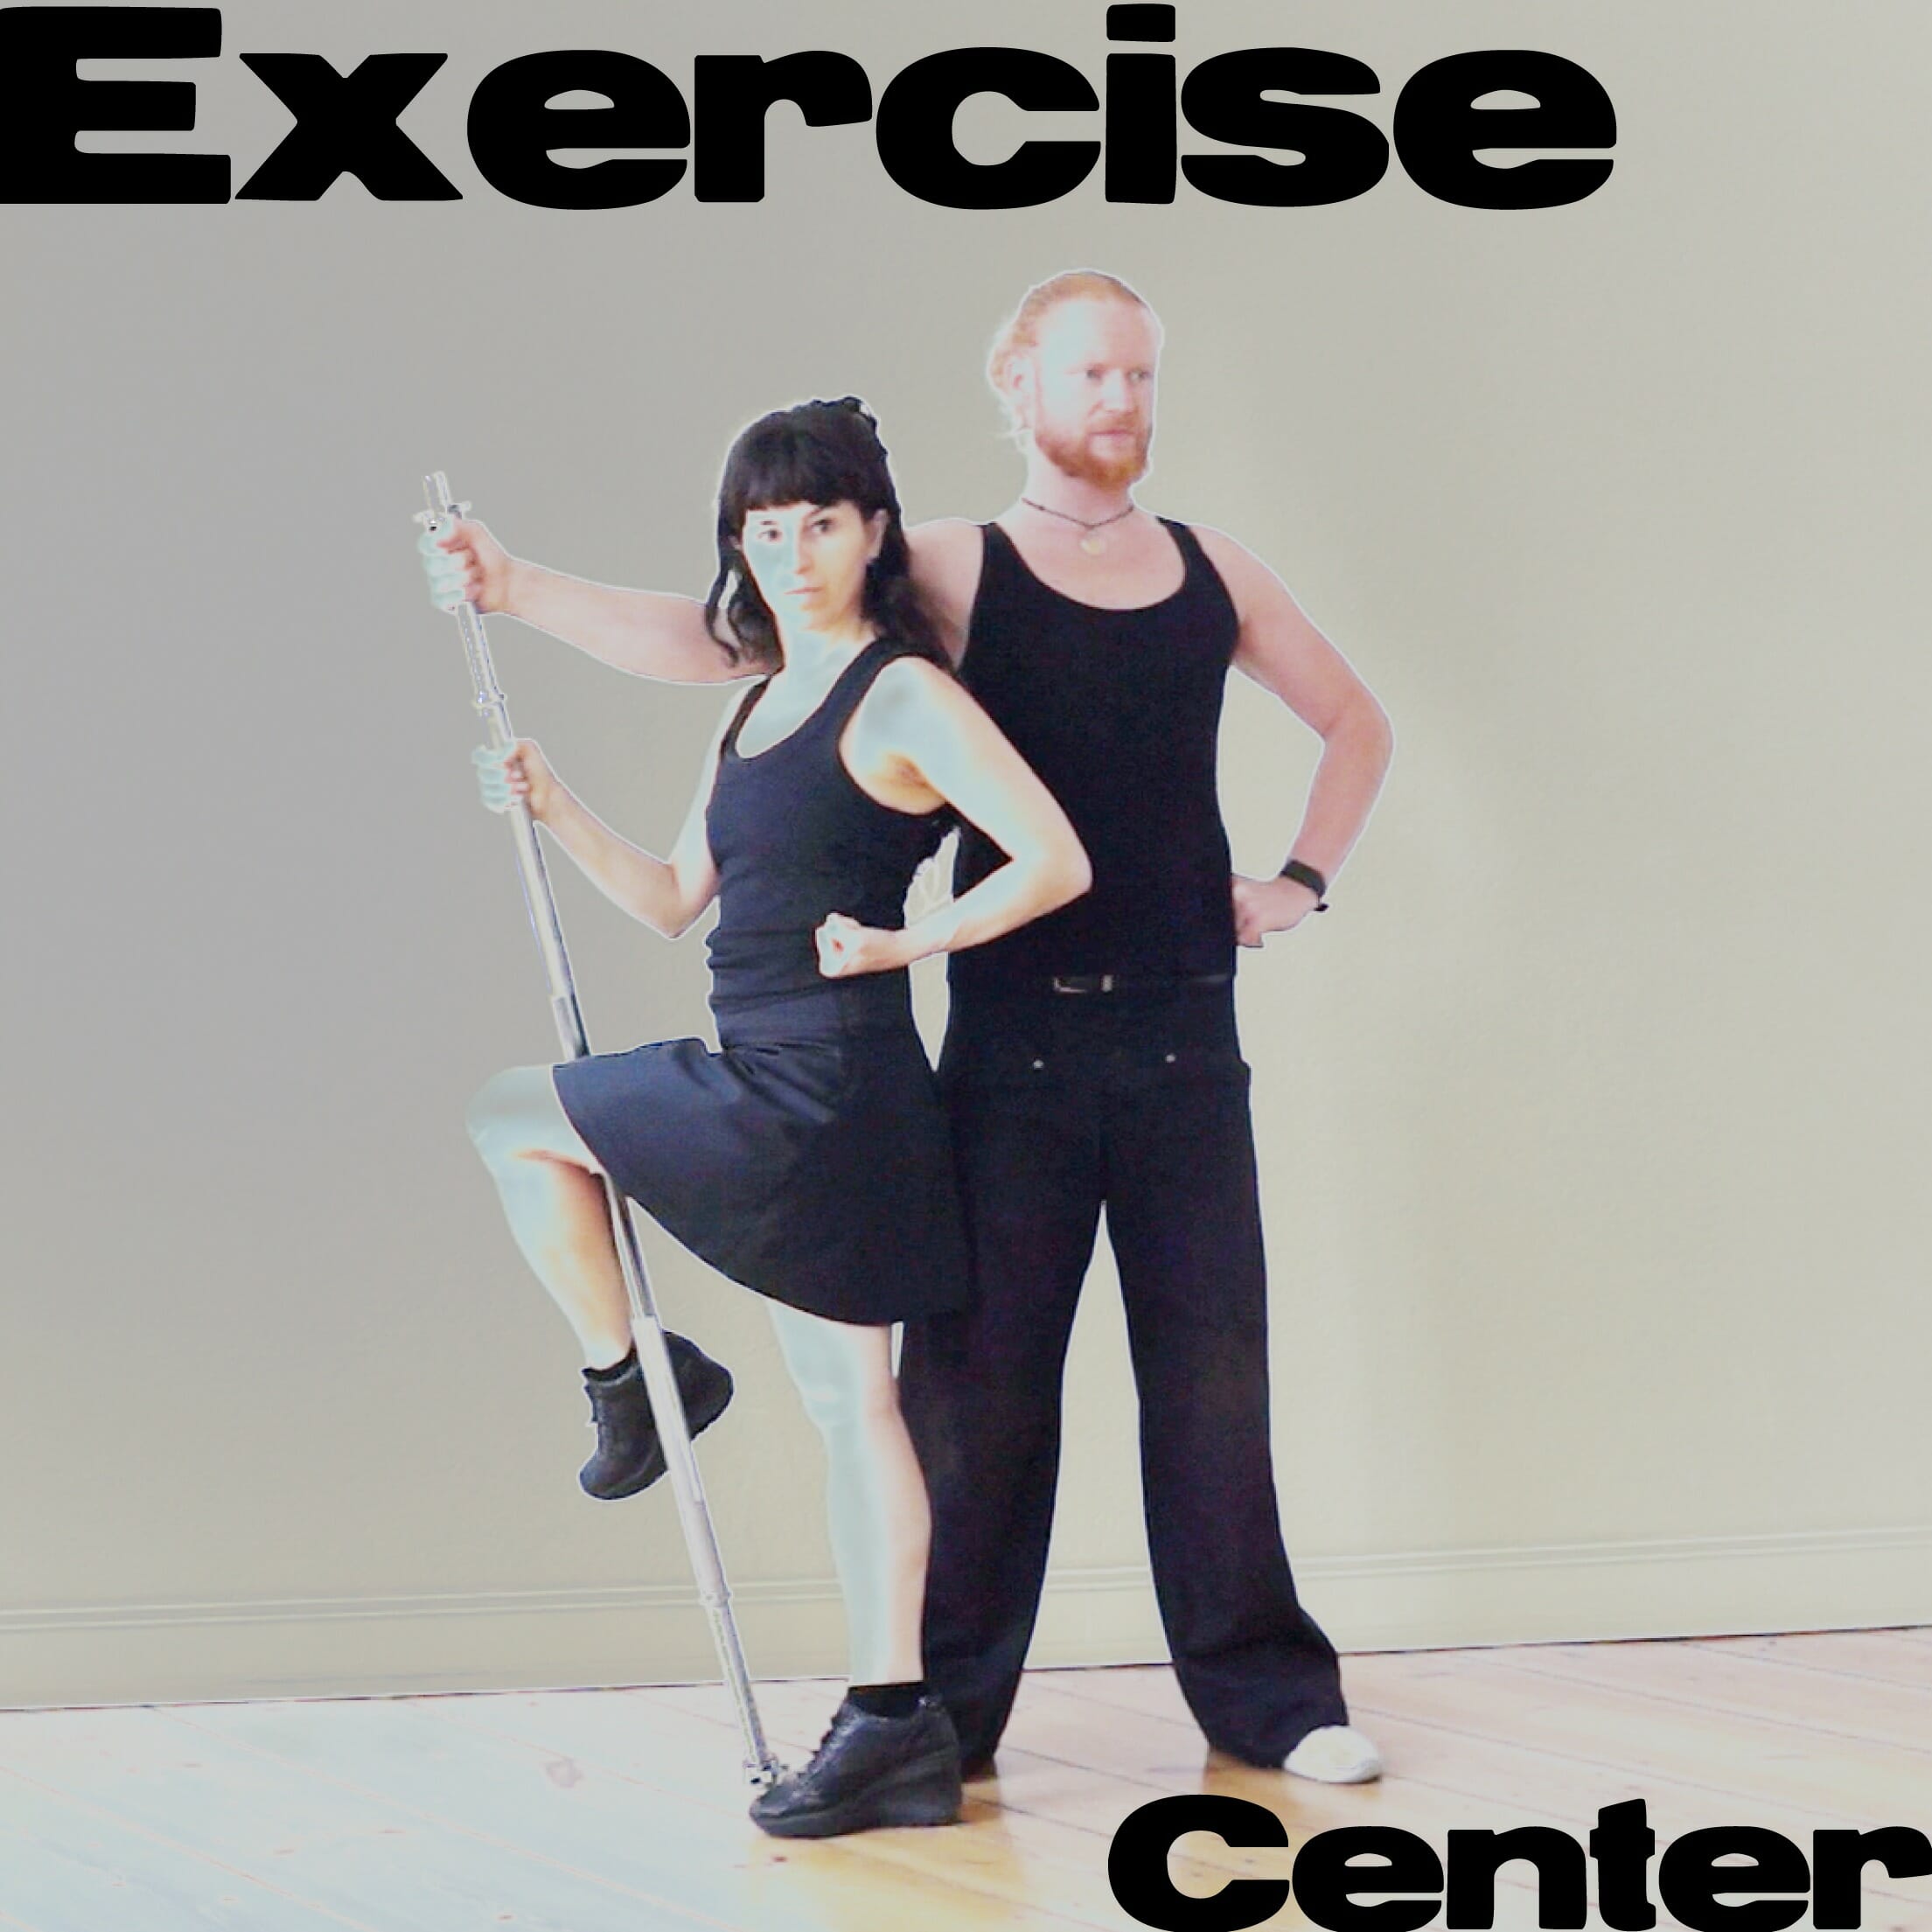 exercisecenterlogo